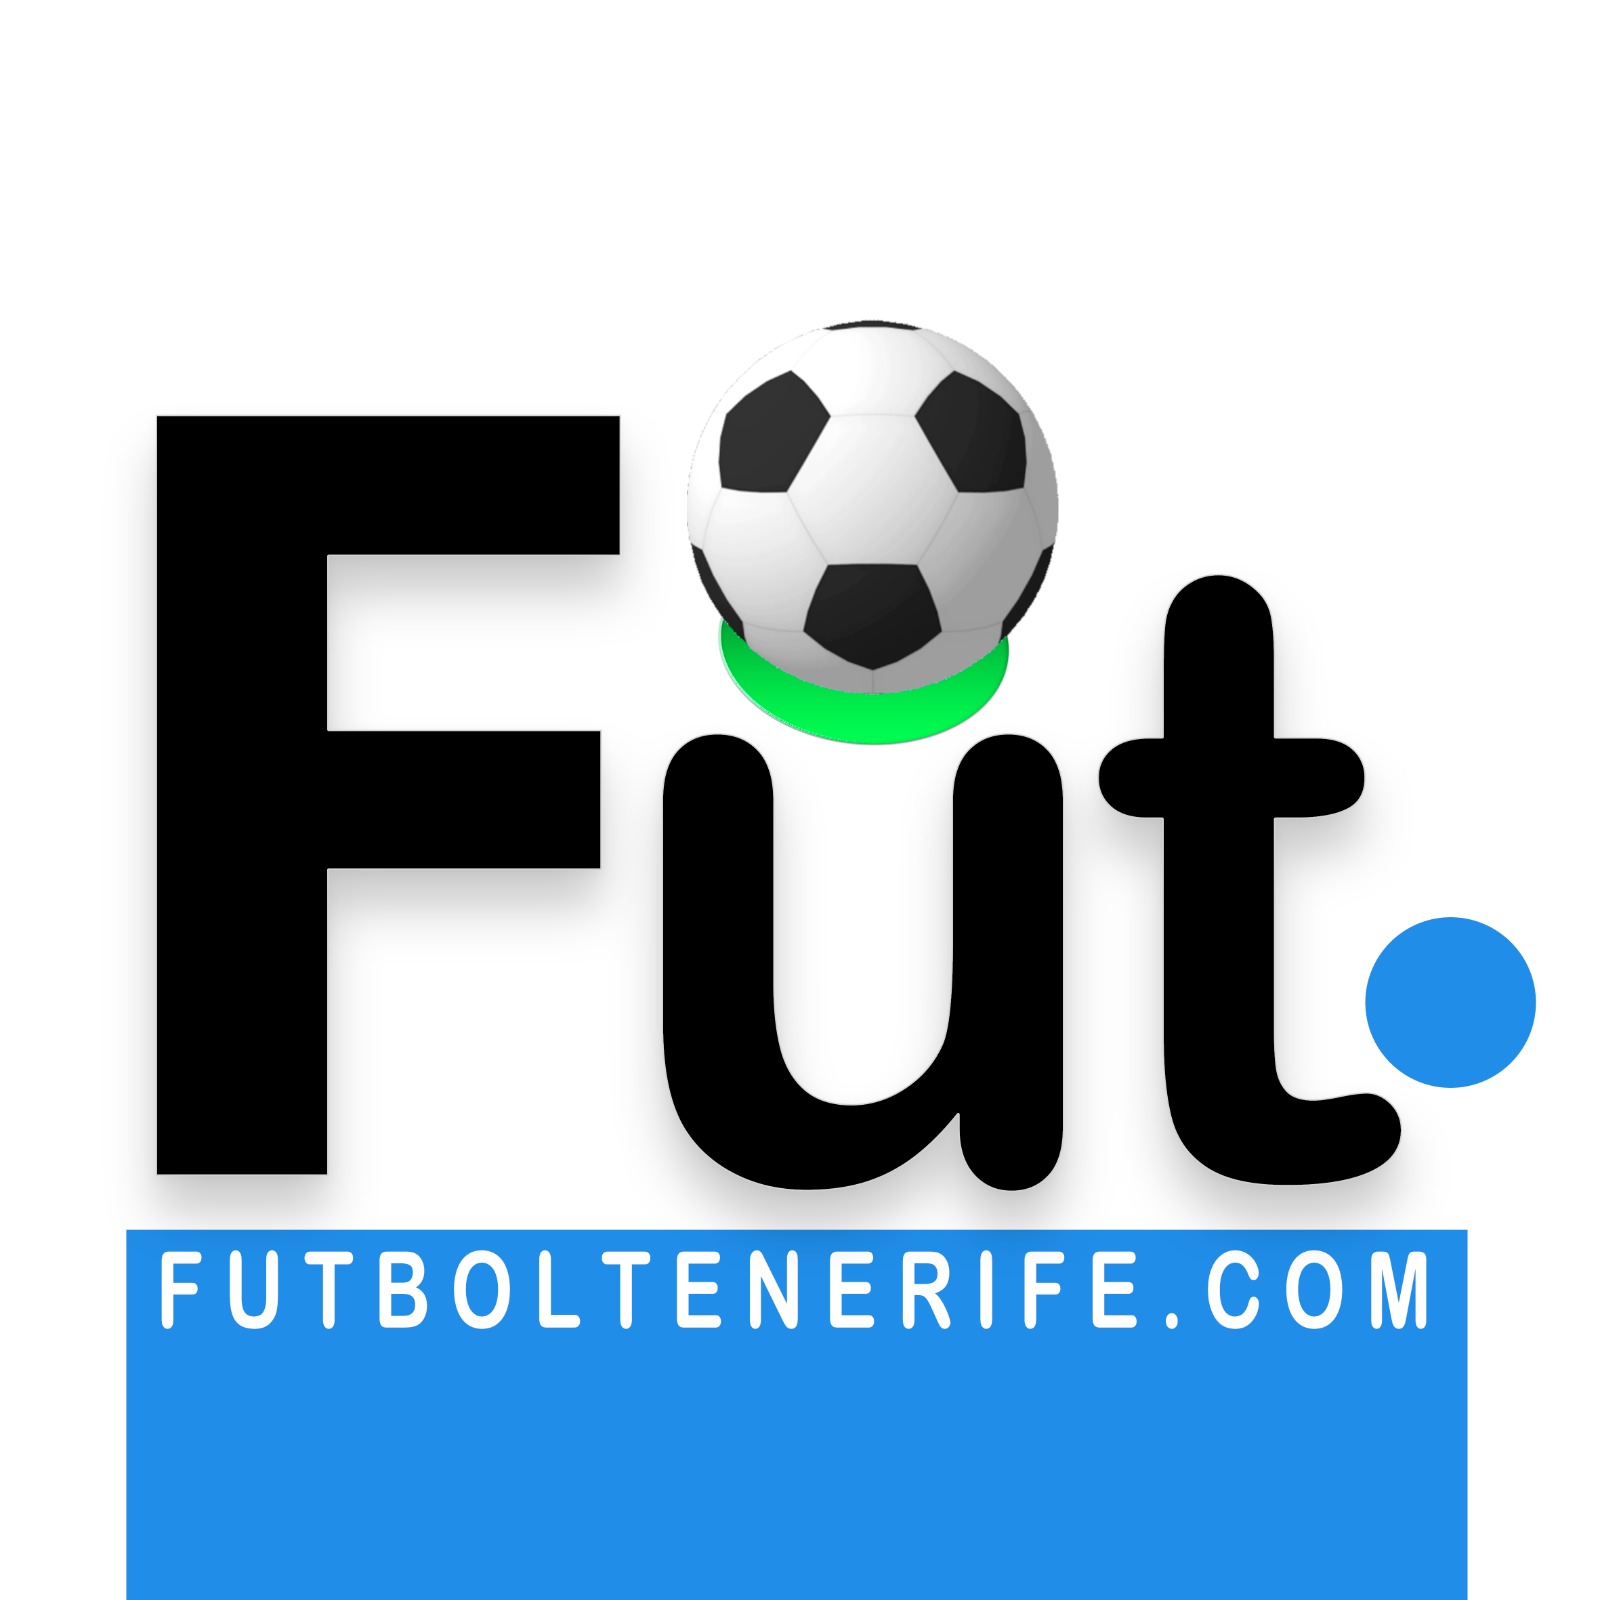 (c) Futboltenerife.com